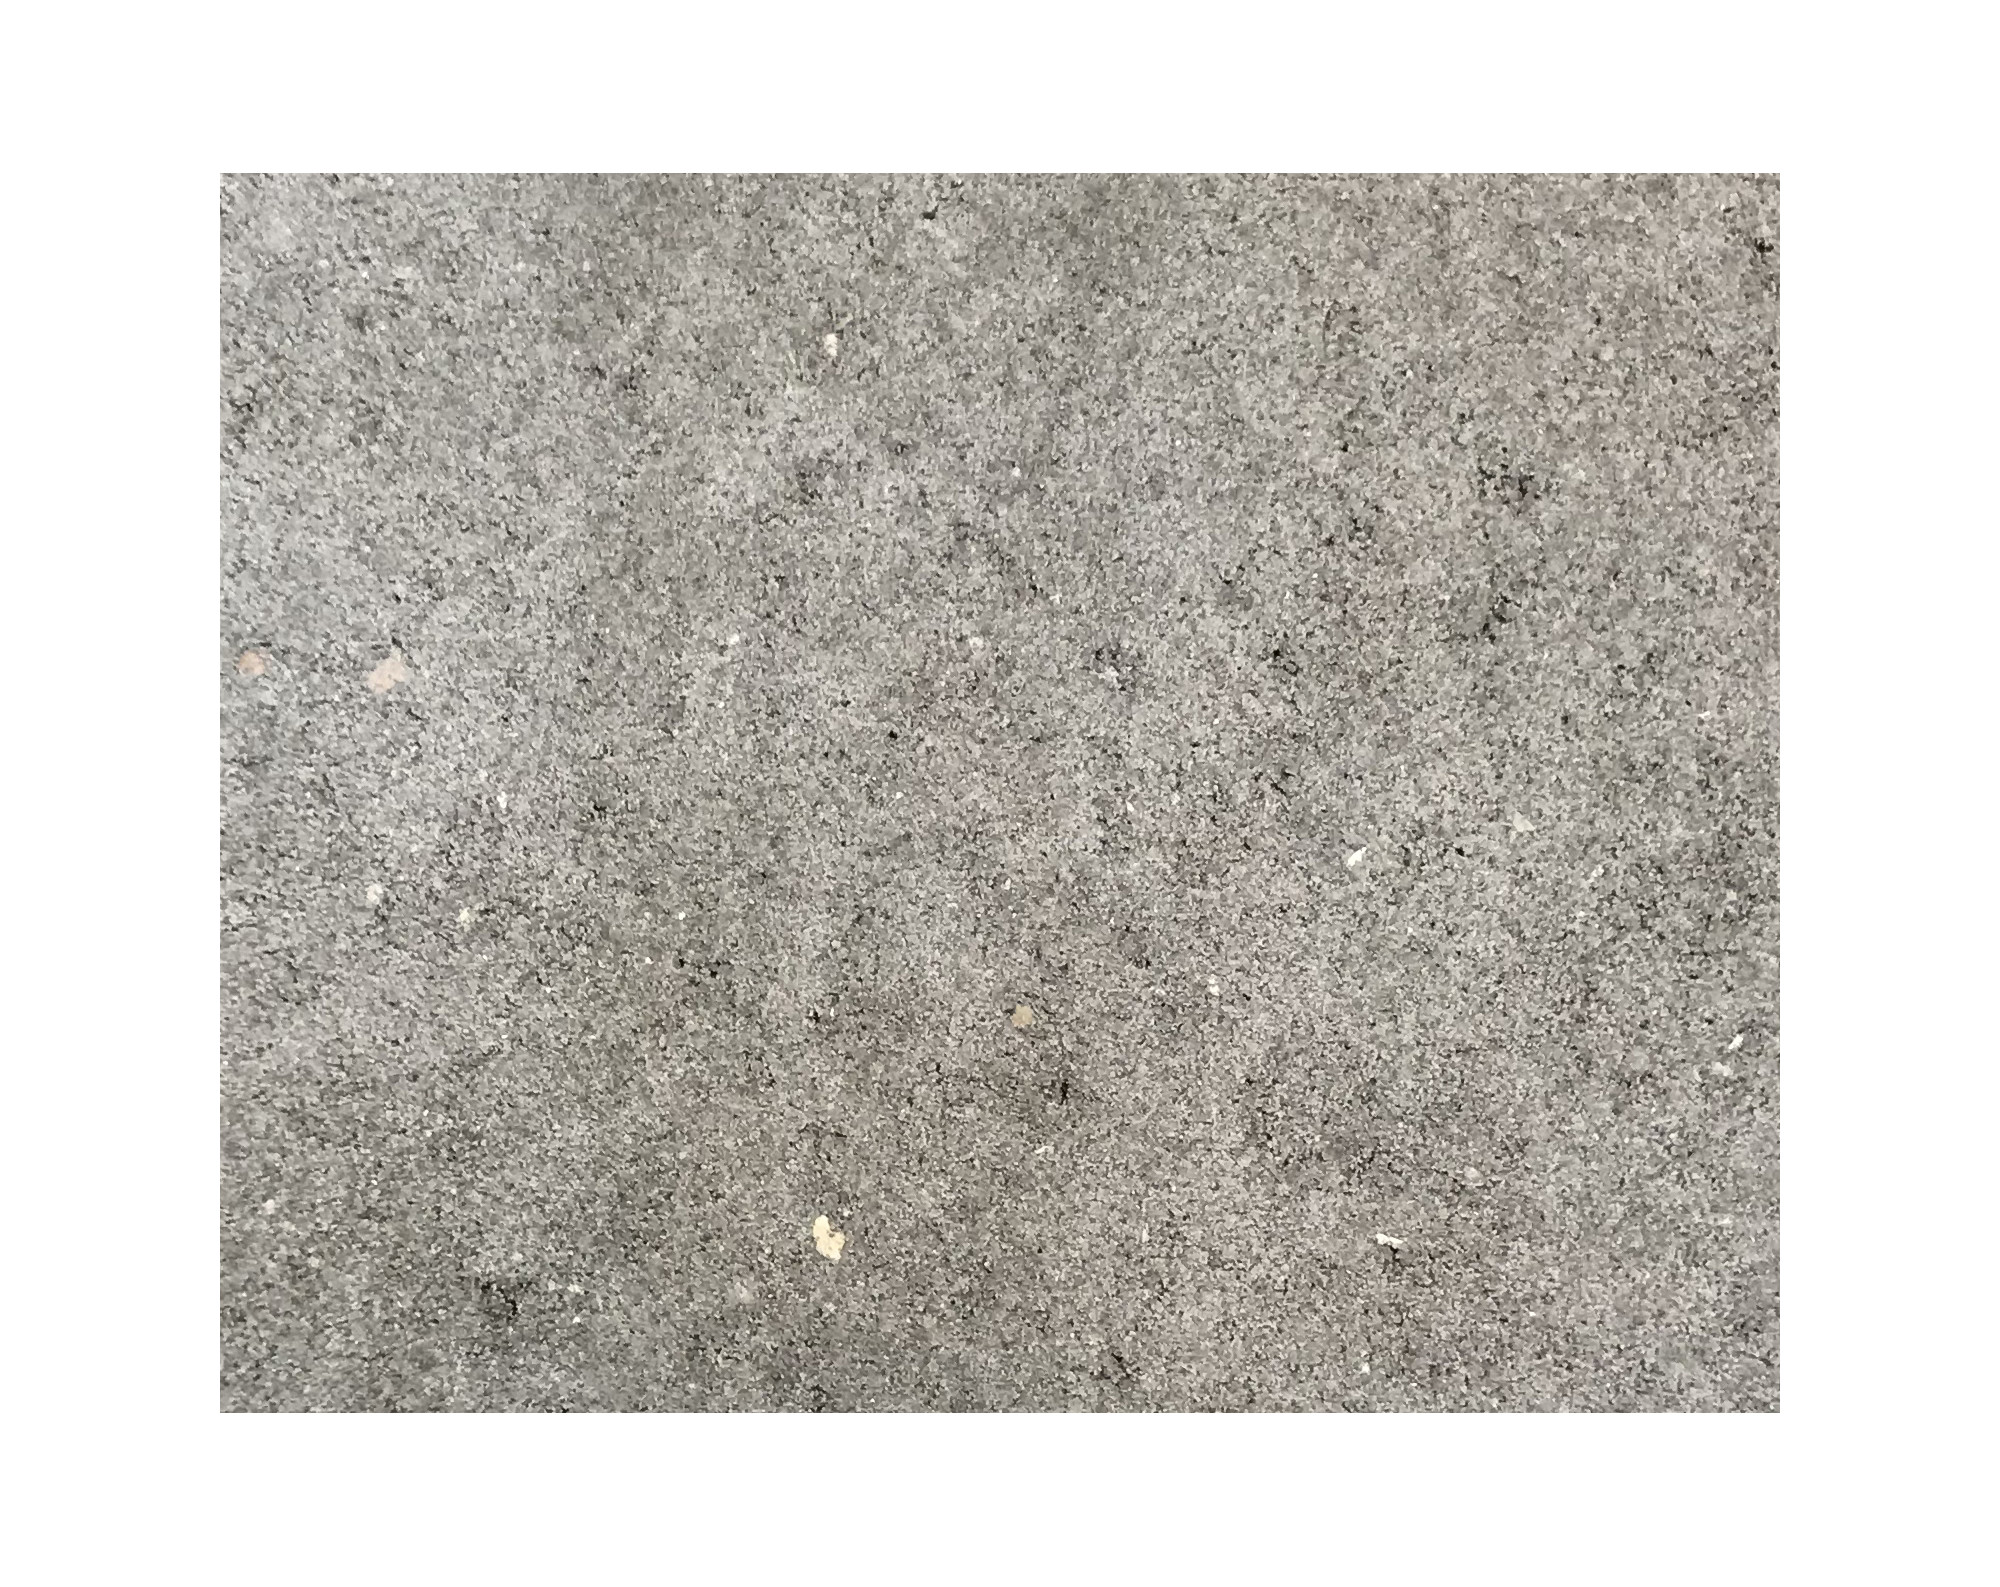 Harmo roc nevadaset,rustica-serie, rechthoekig afmetingen 4,00mx8,00m, grijs, beton